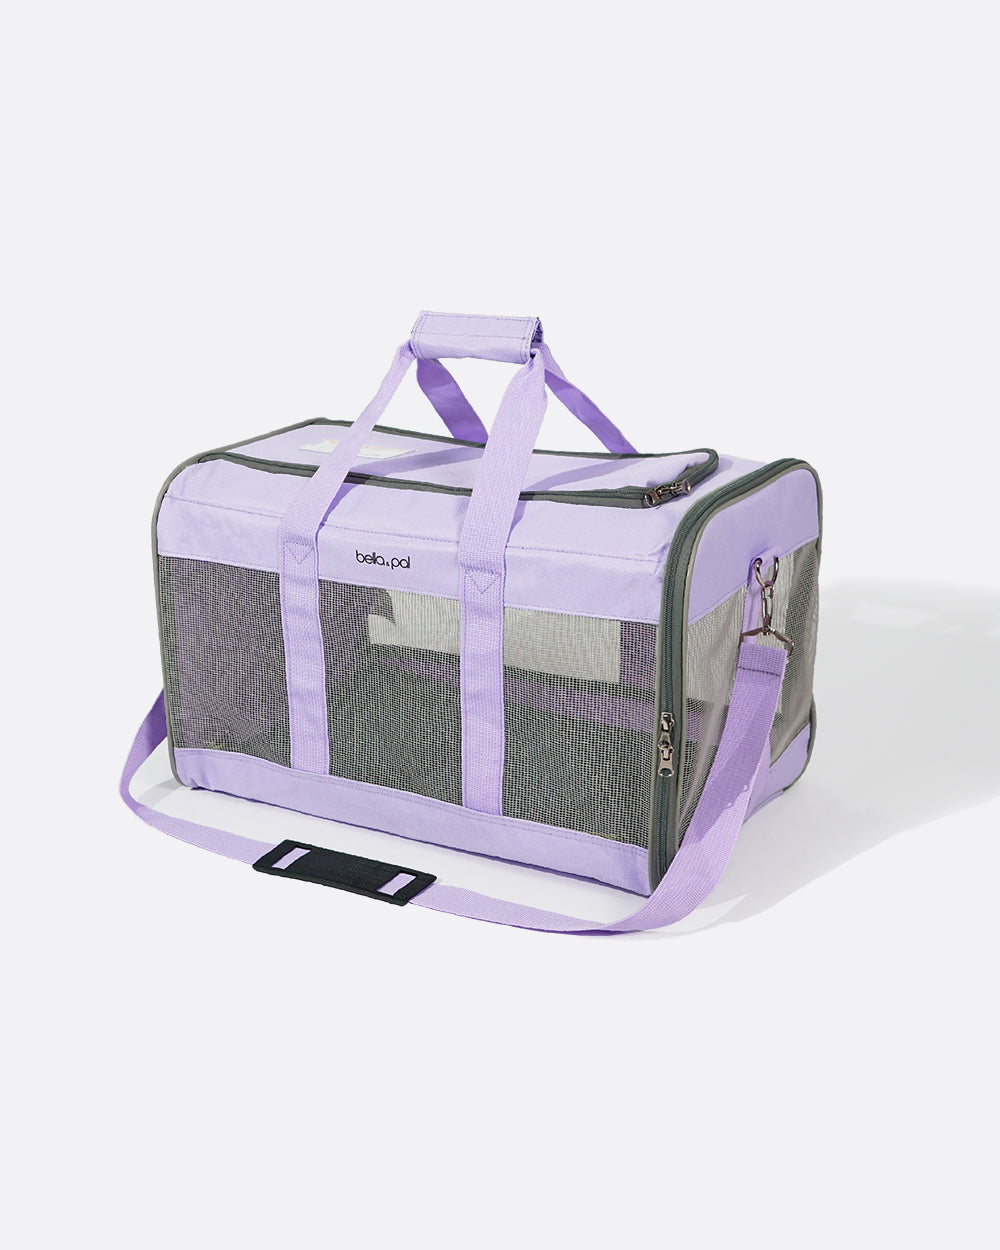 Portable Pet Travel Carrier - Lilac Mist